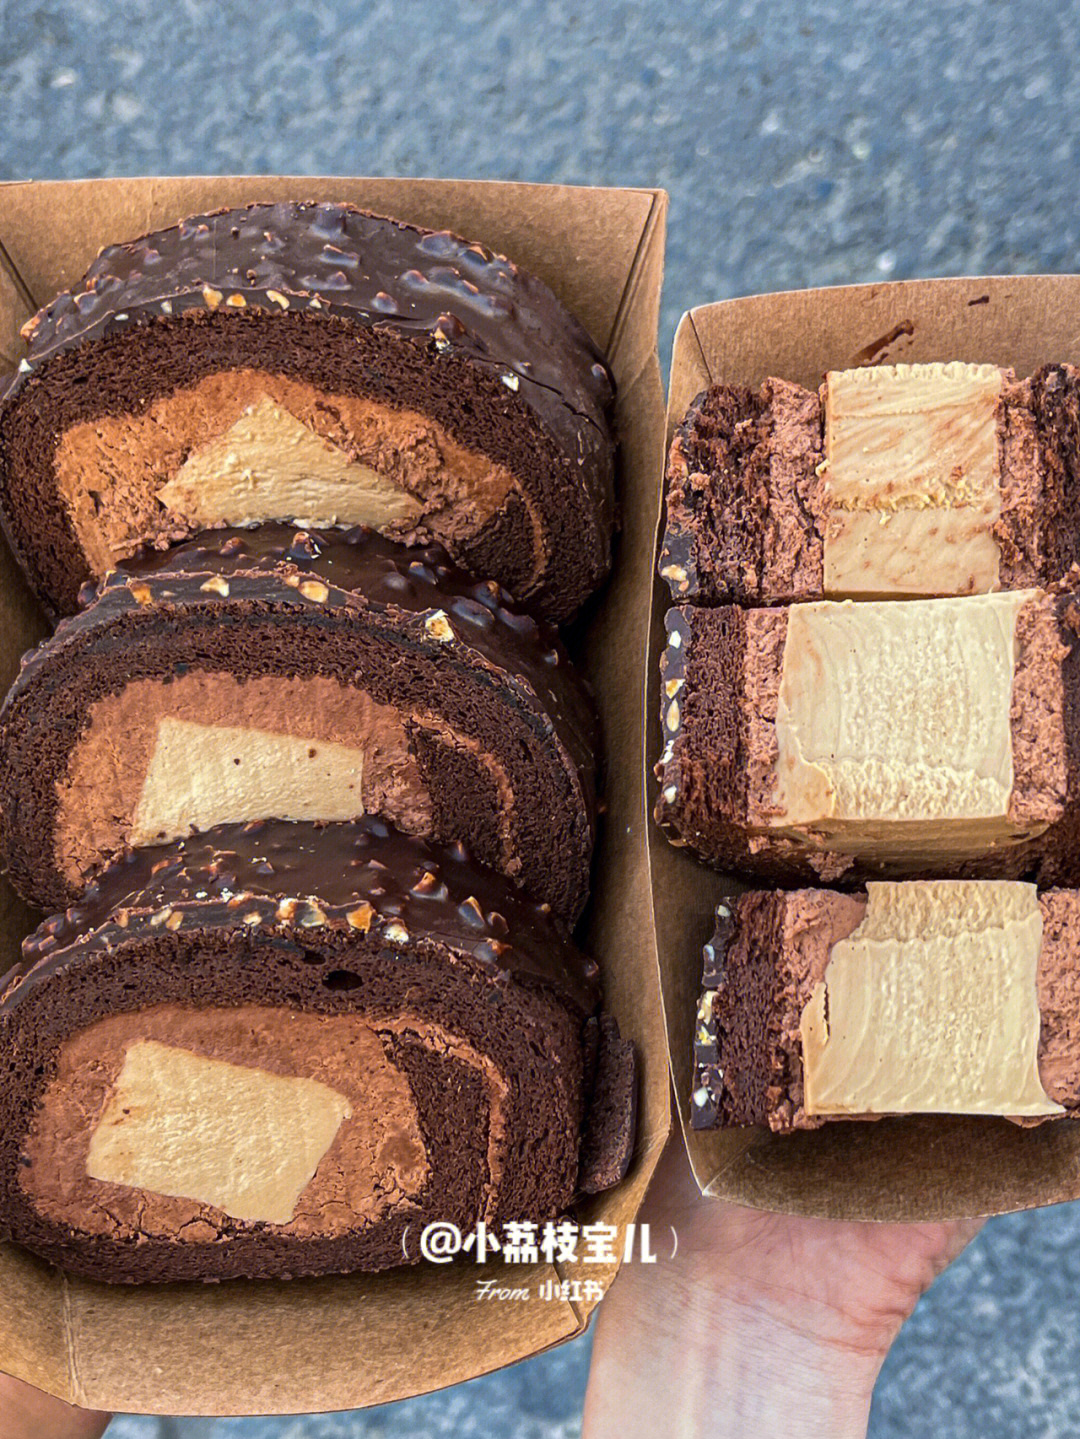 坚果巧克力脆皮下包裹着软fufu的奶冻蛋糕卷巧克力和奶油融合